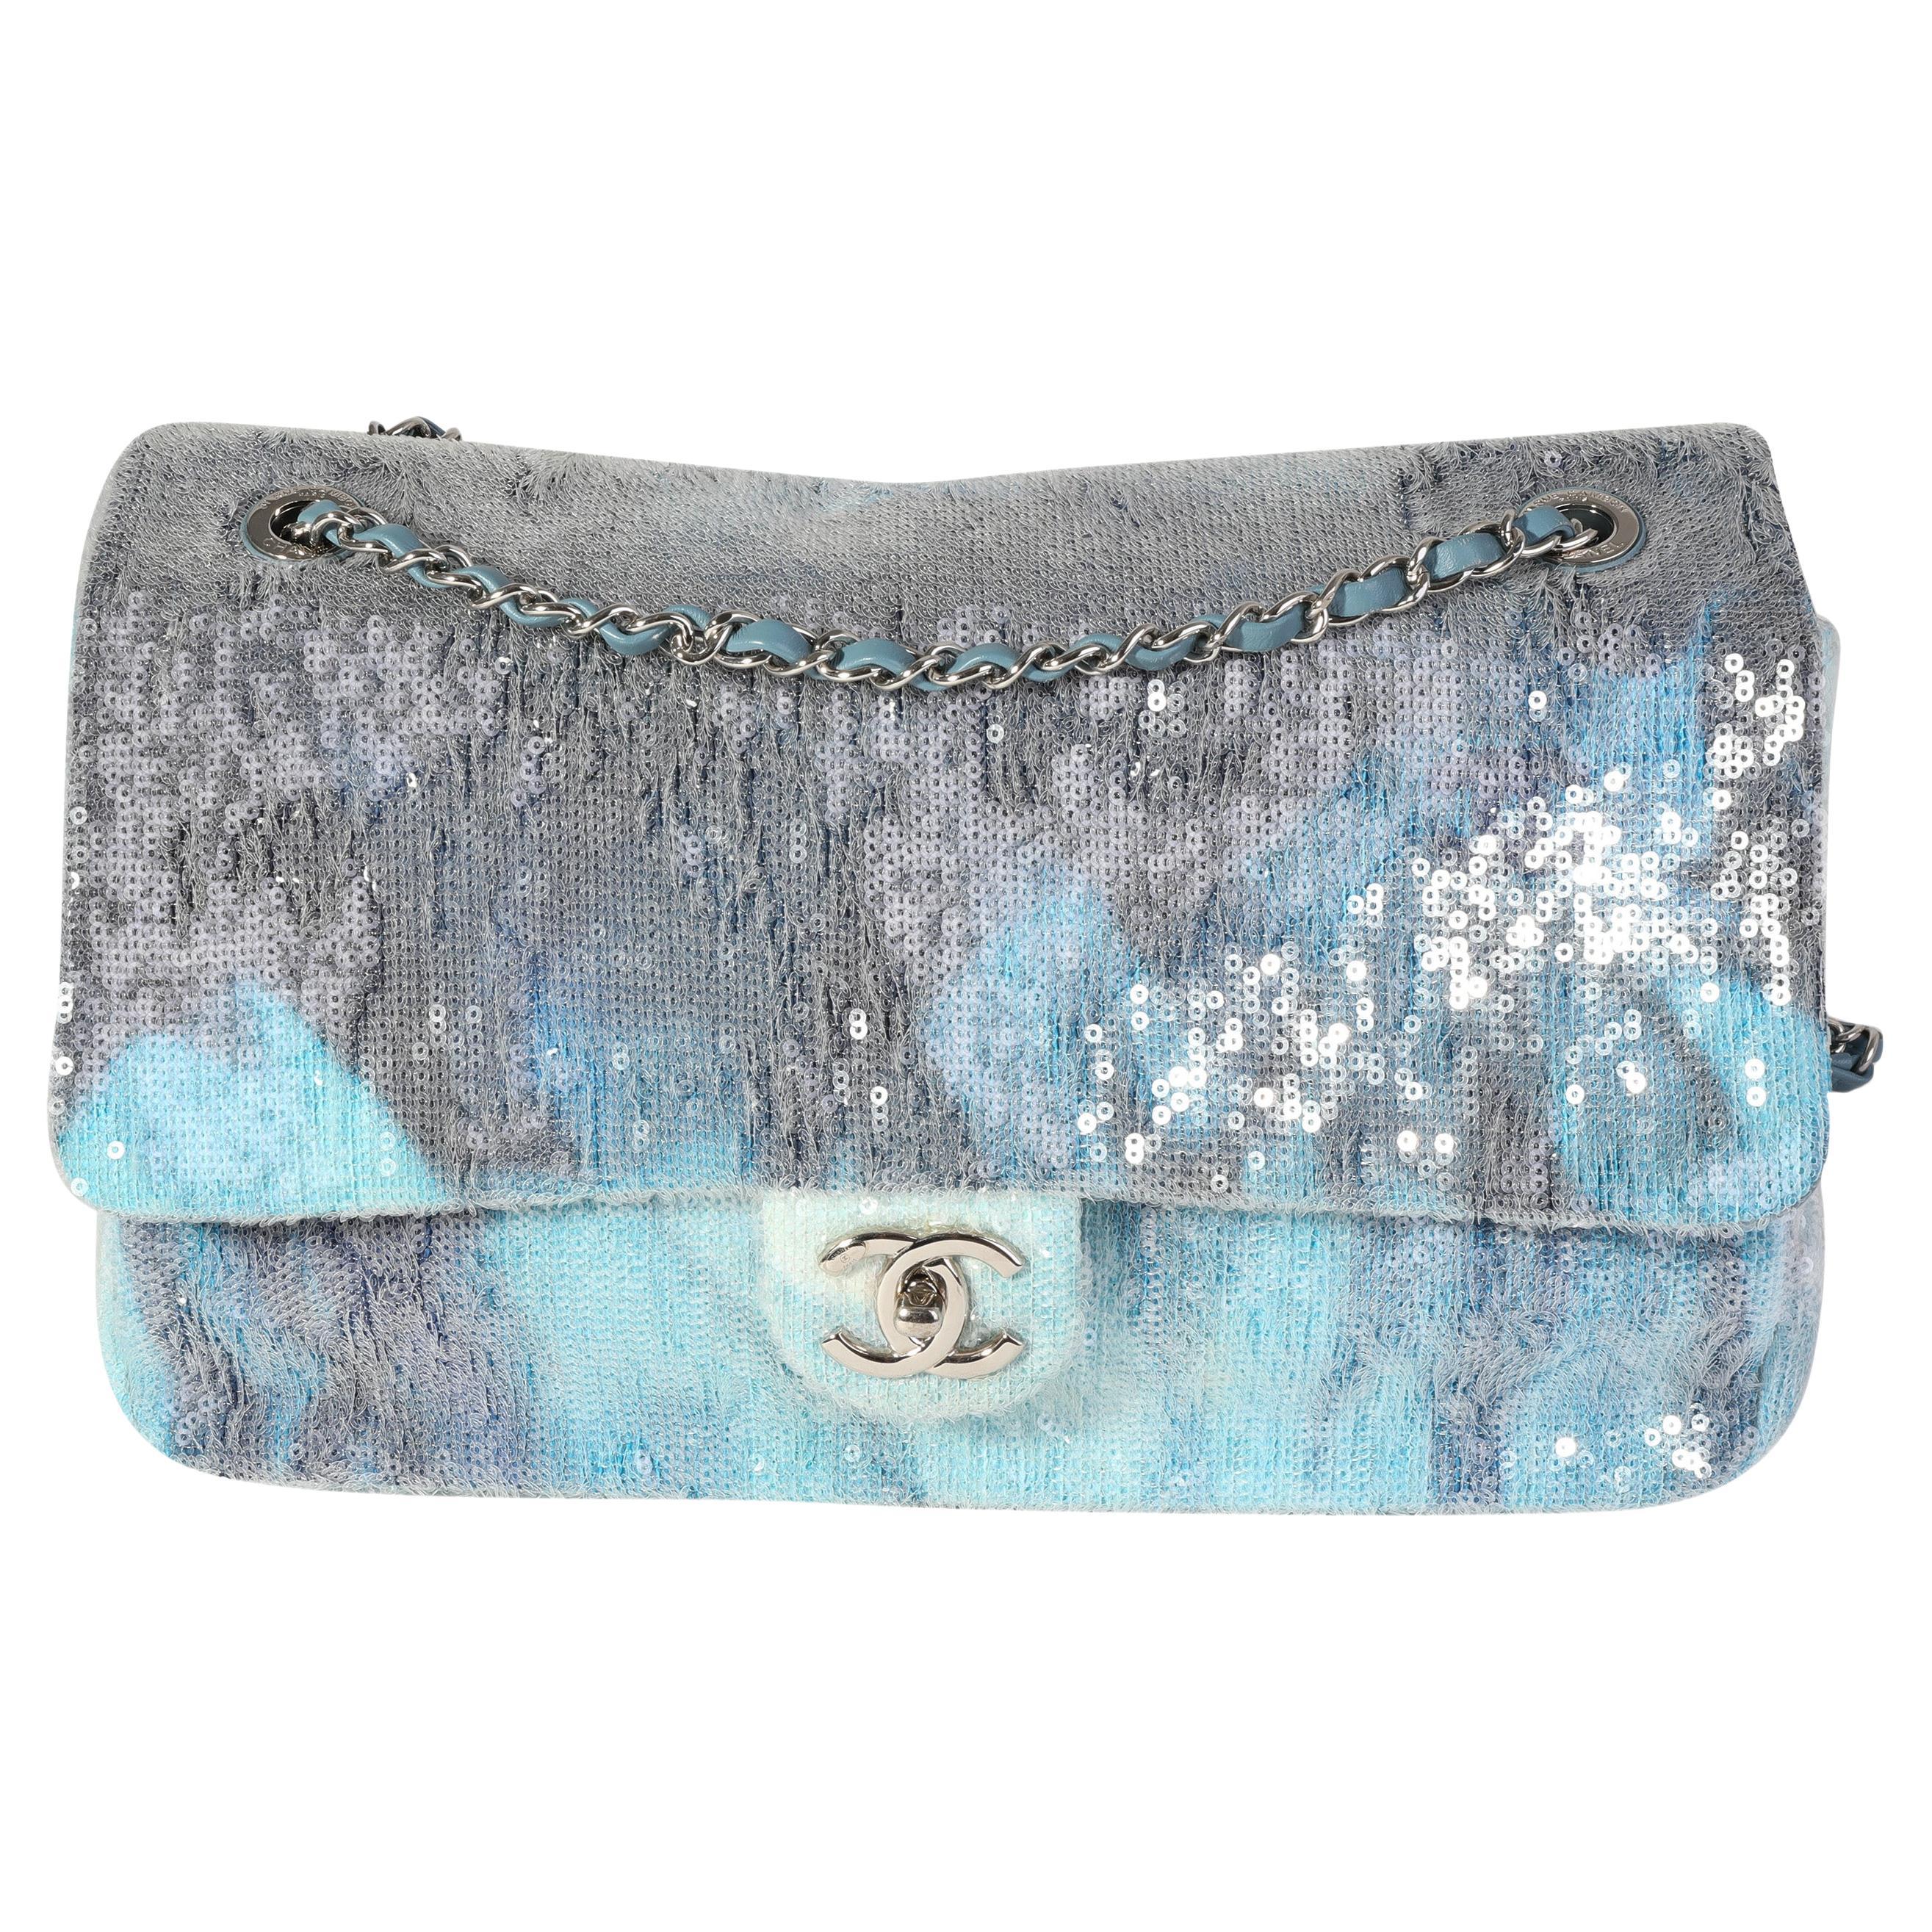 CHANEL Sequin Bags & Handbags for Women